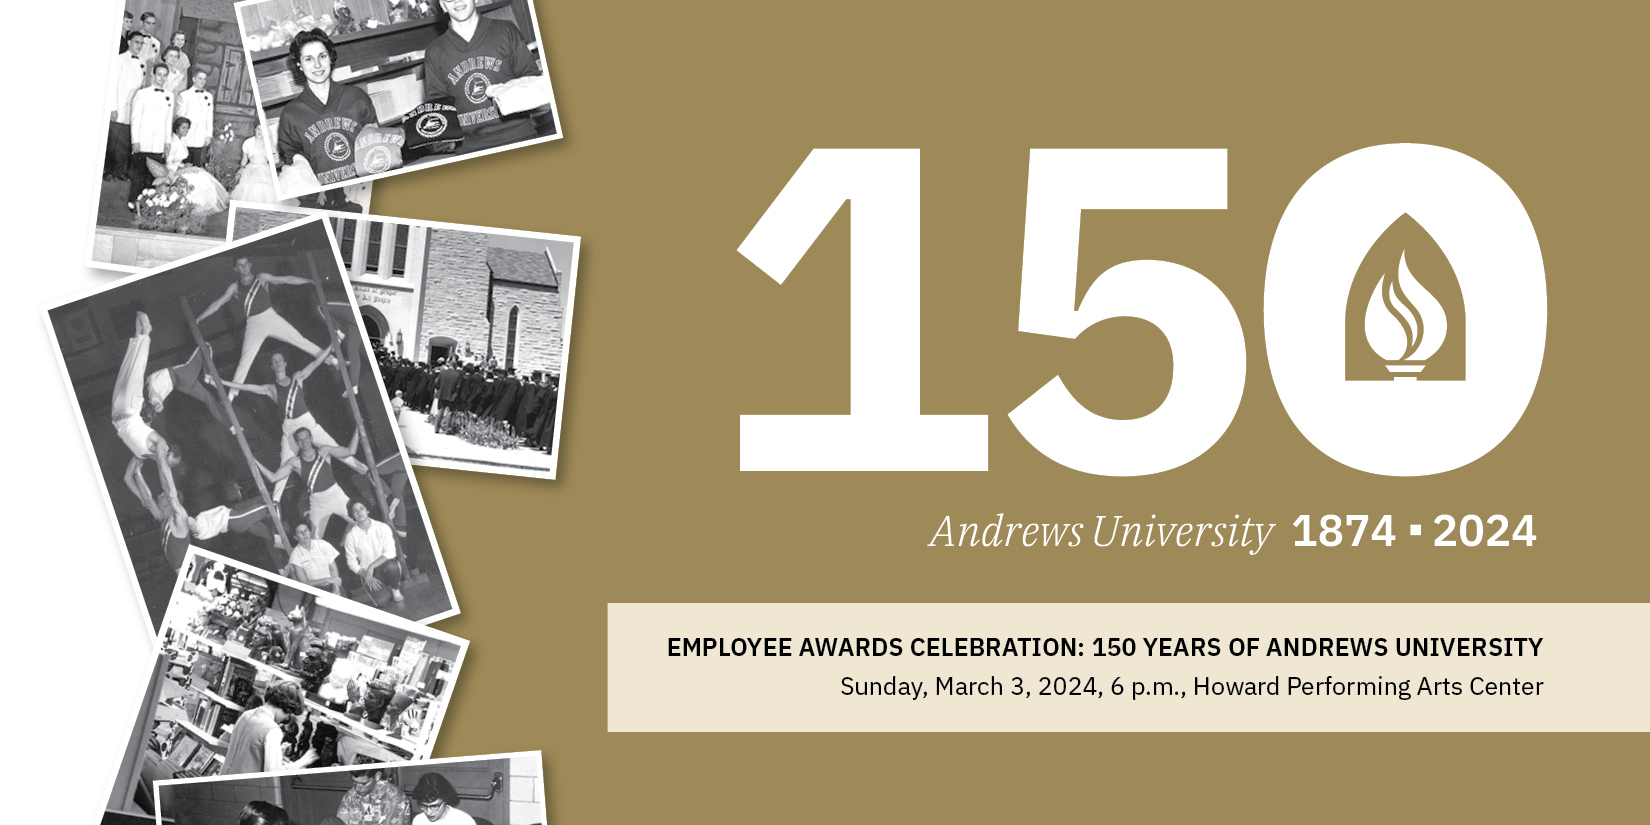 Employee Awards Celebration: 150 years of Andrews University